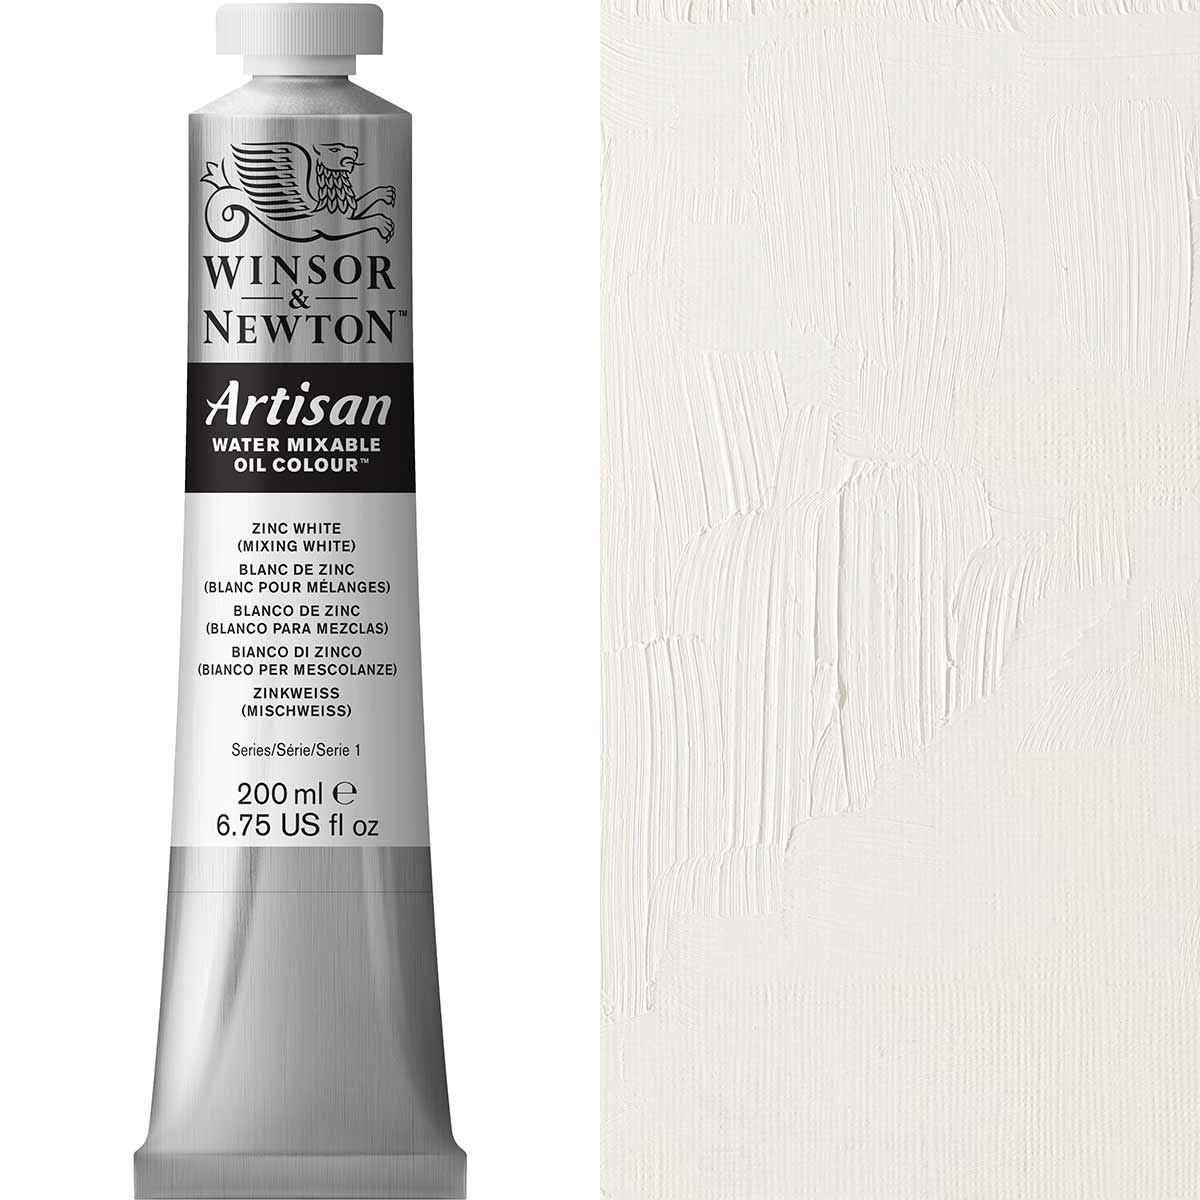 Winsor et Newton - Couleur d'huile artisanale Watermixable - 200 ml - Mélange de zinc blanc